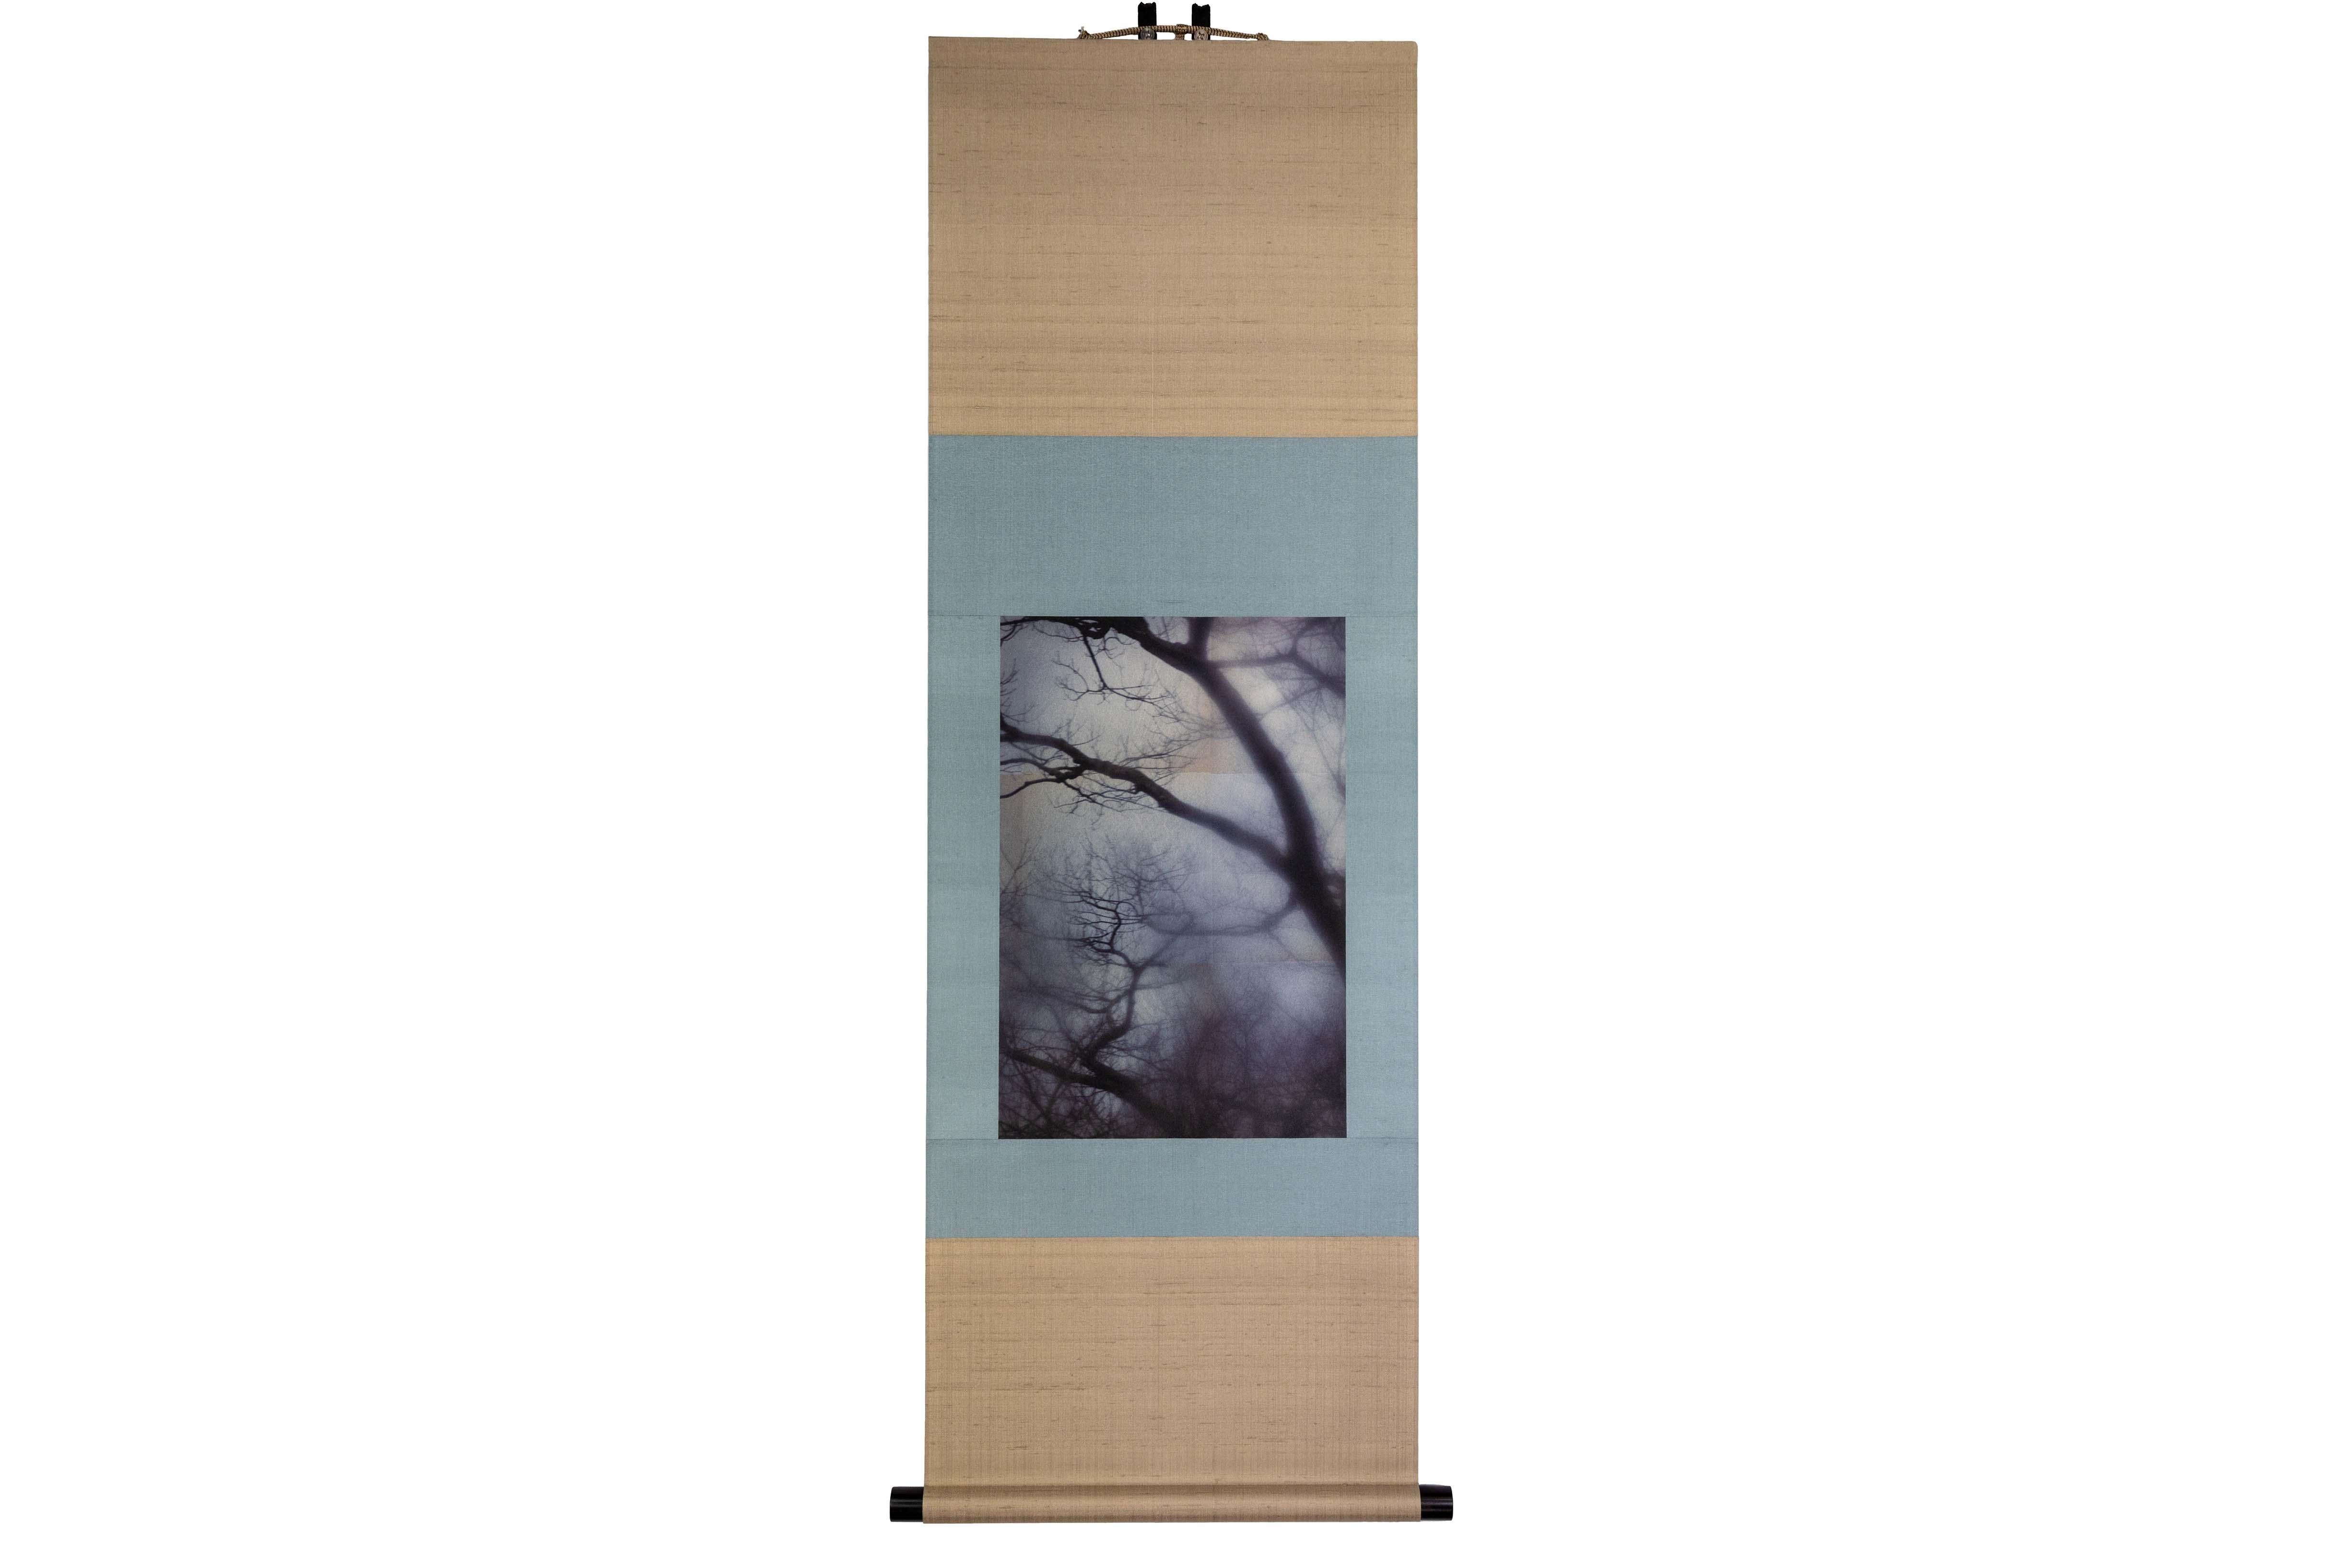 Tirage UV d'une photographie numérique sur feuille d'étain sur papier, monté dans un rouleau de soie japonais

Kojun est un artiste autodidacte américain multimédia né en 1977 et basé à Tokyo, au Japon, depuis 1999. Le projet Kojun, lancé en 2010,